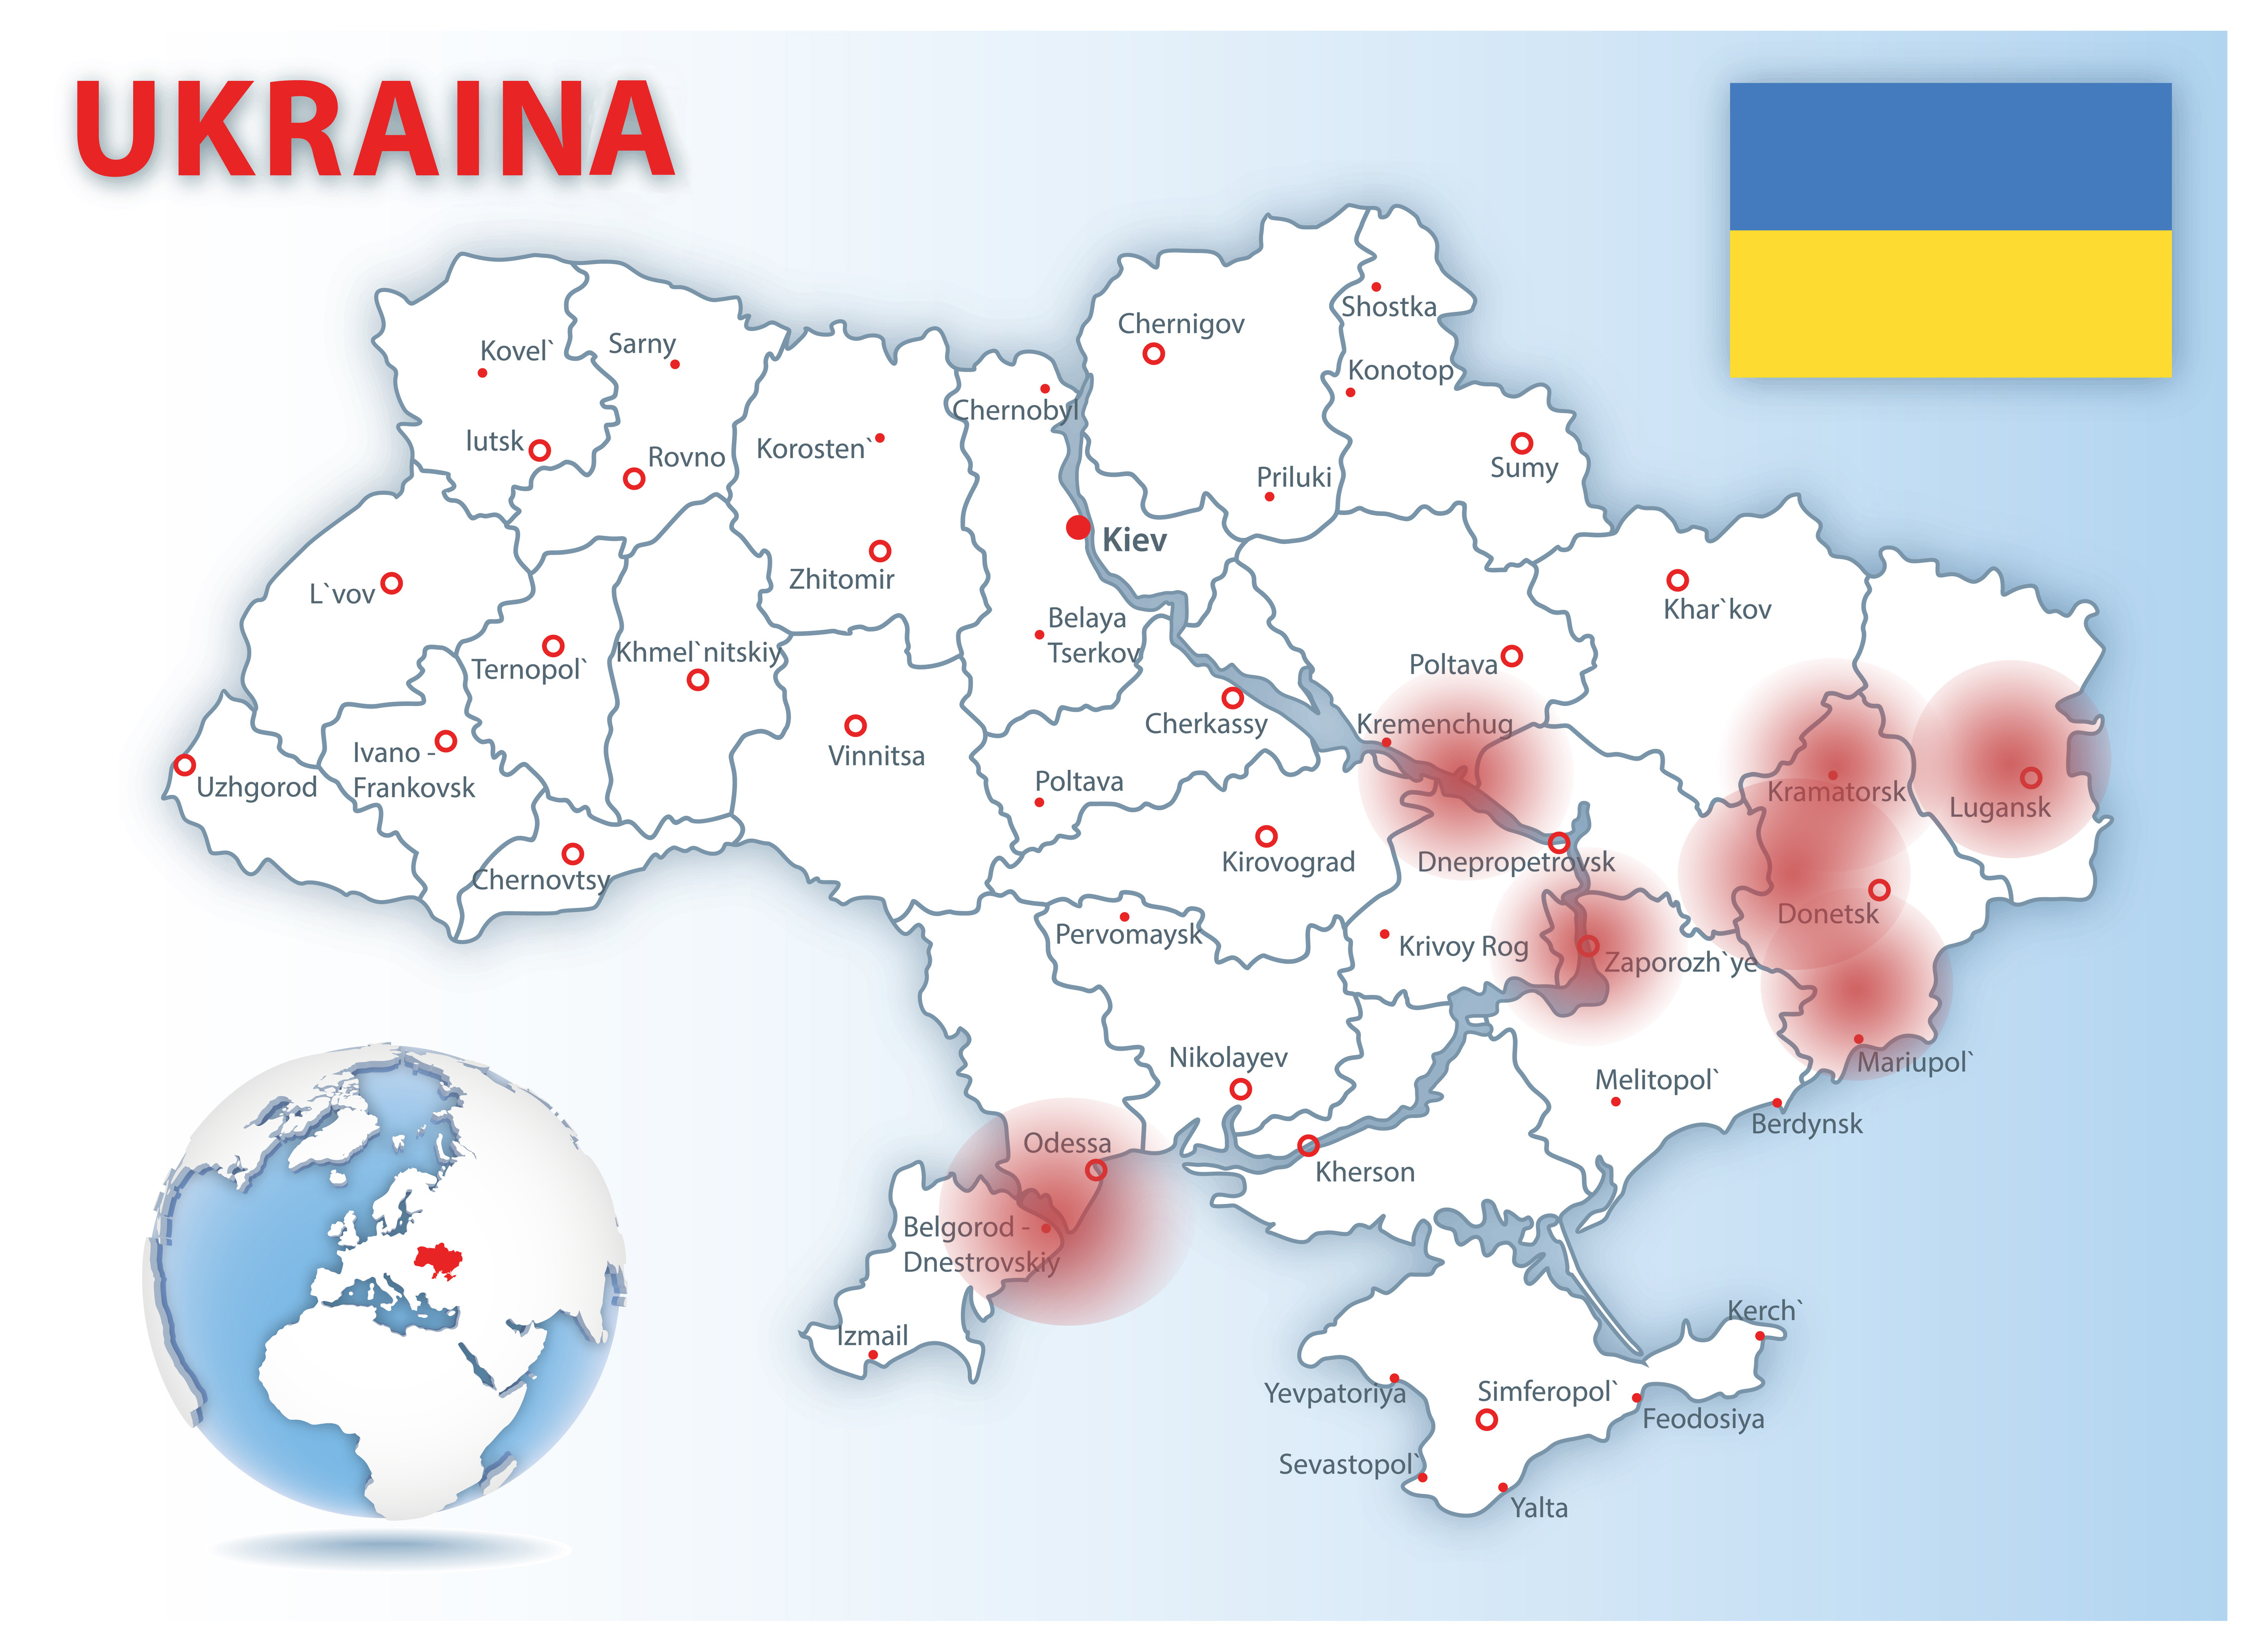 Avainmedia tukee radiohanketta Ukrainassa - Seurakuntalainen